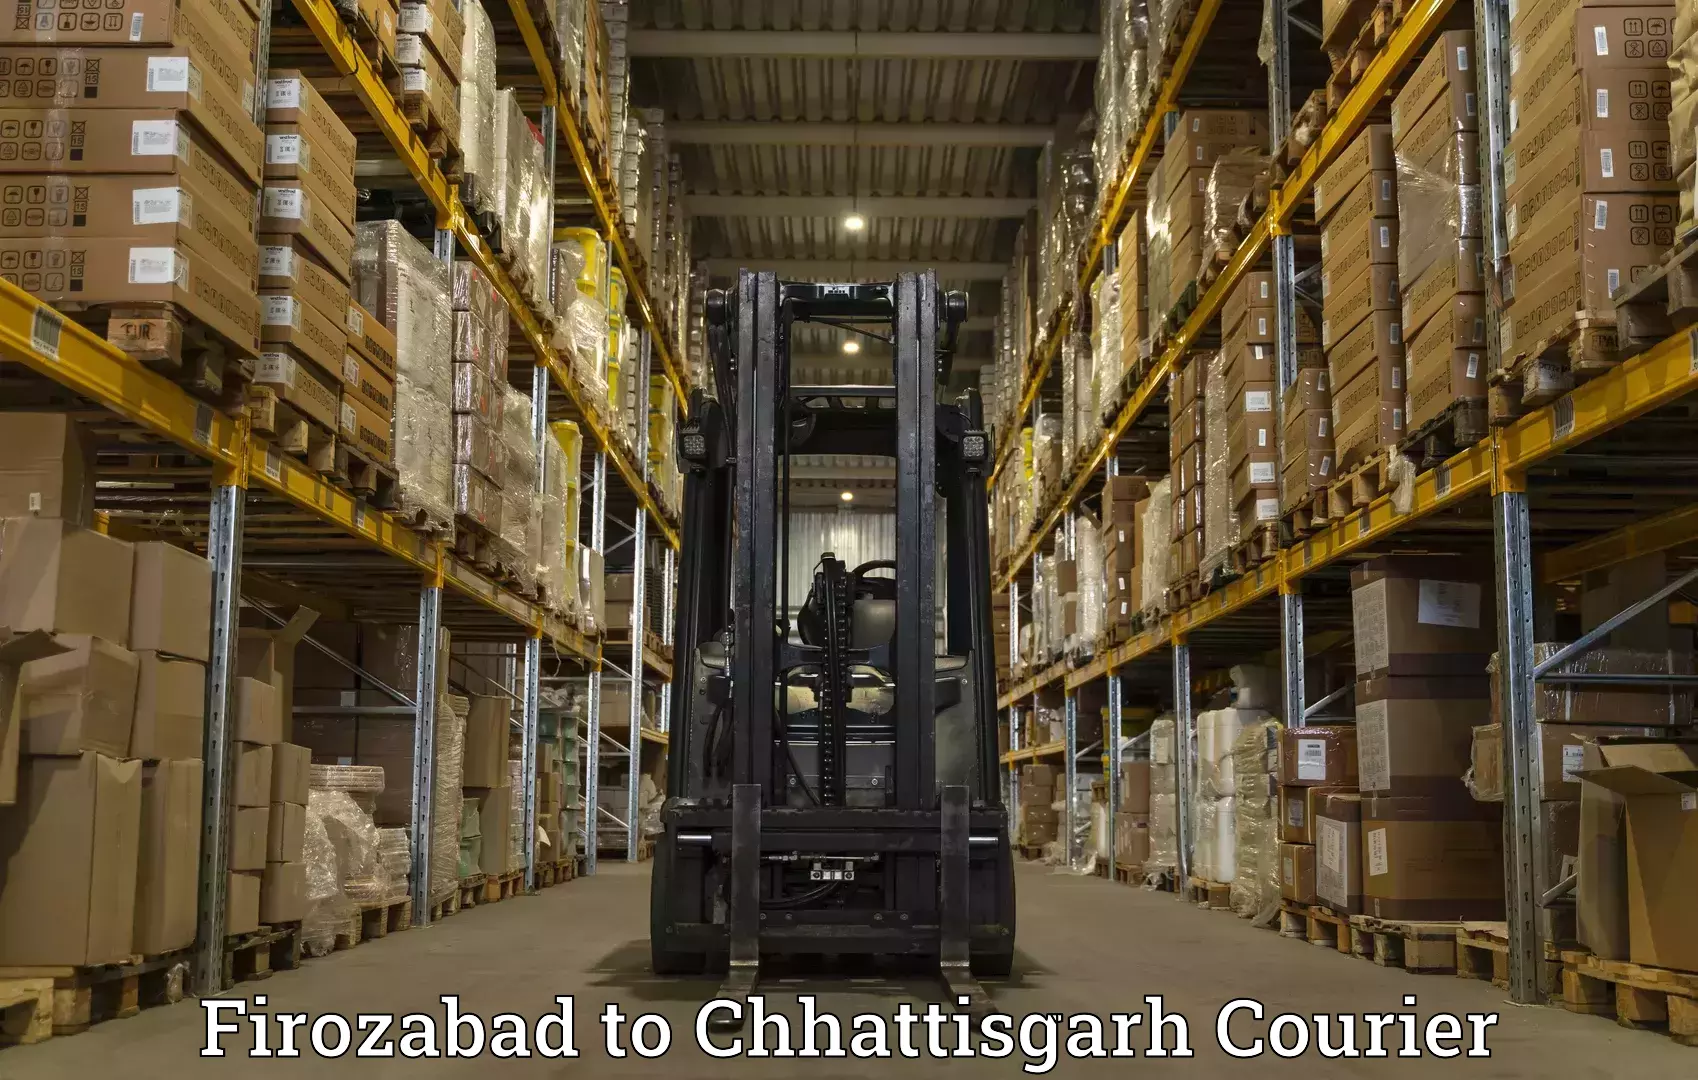 24/7 courier service Firozabad to Raigarh